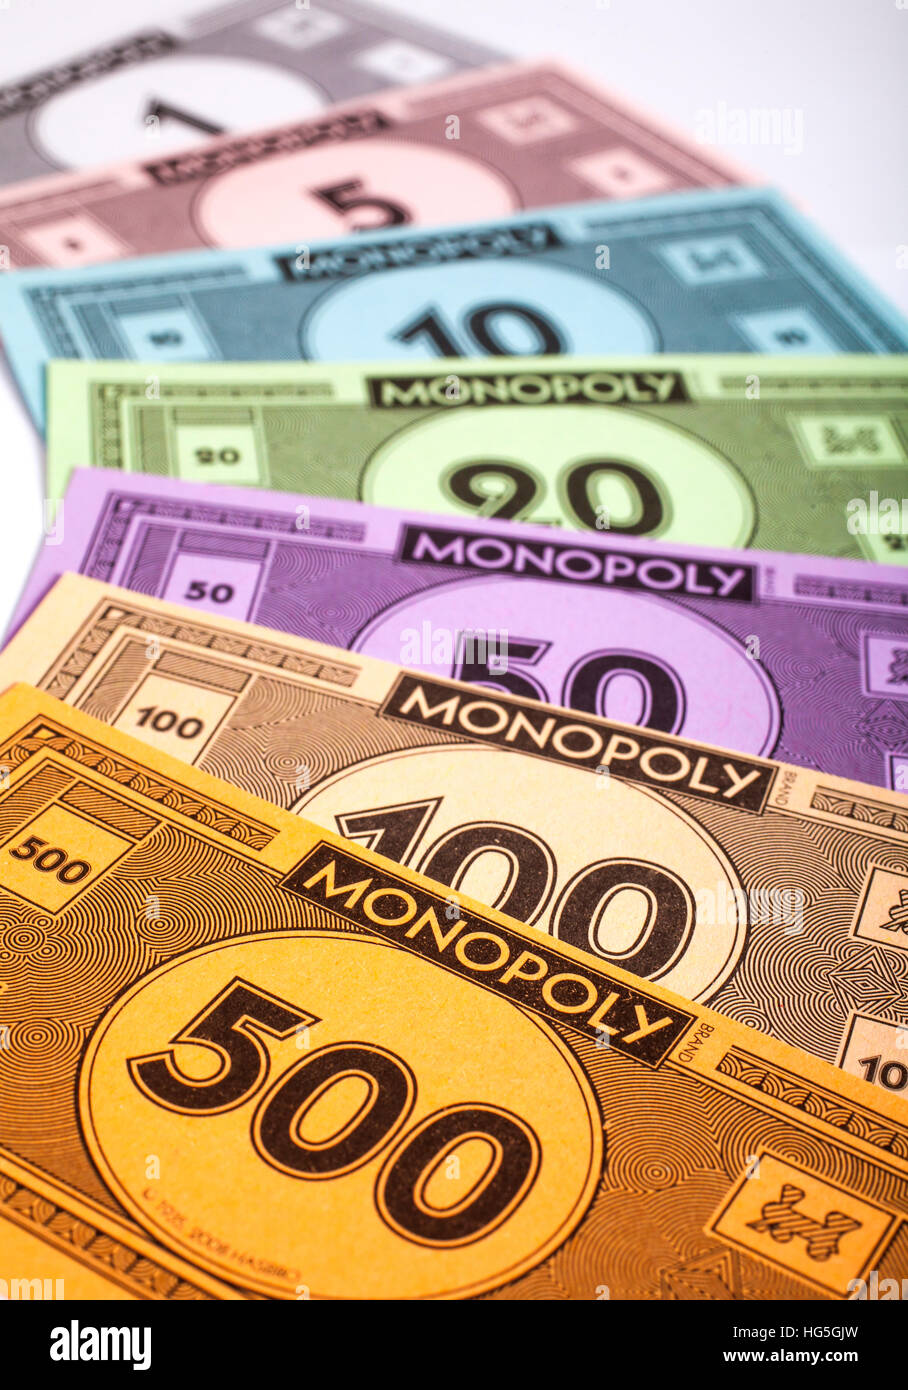 monopoly money amount